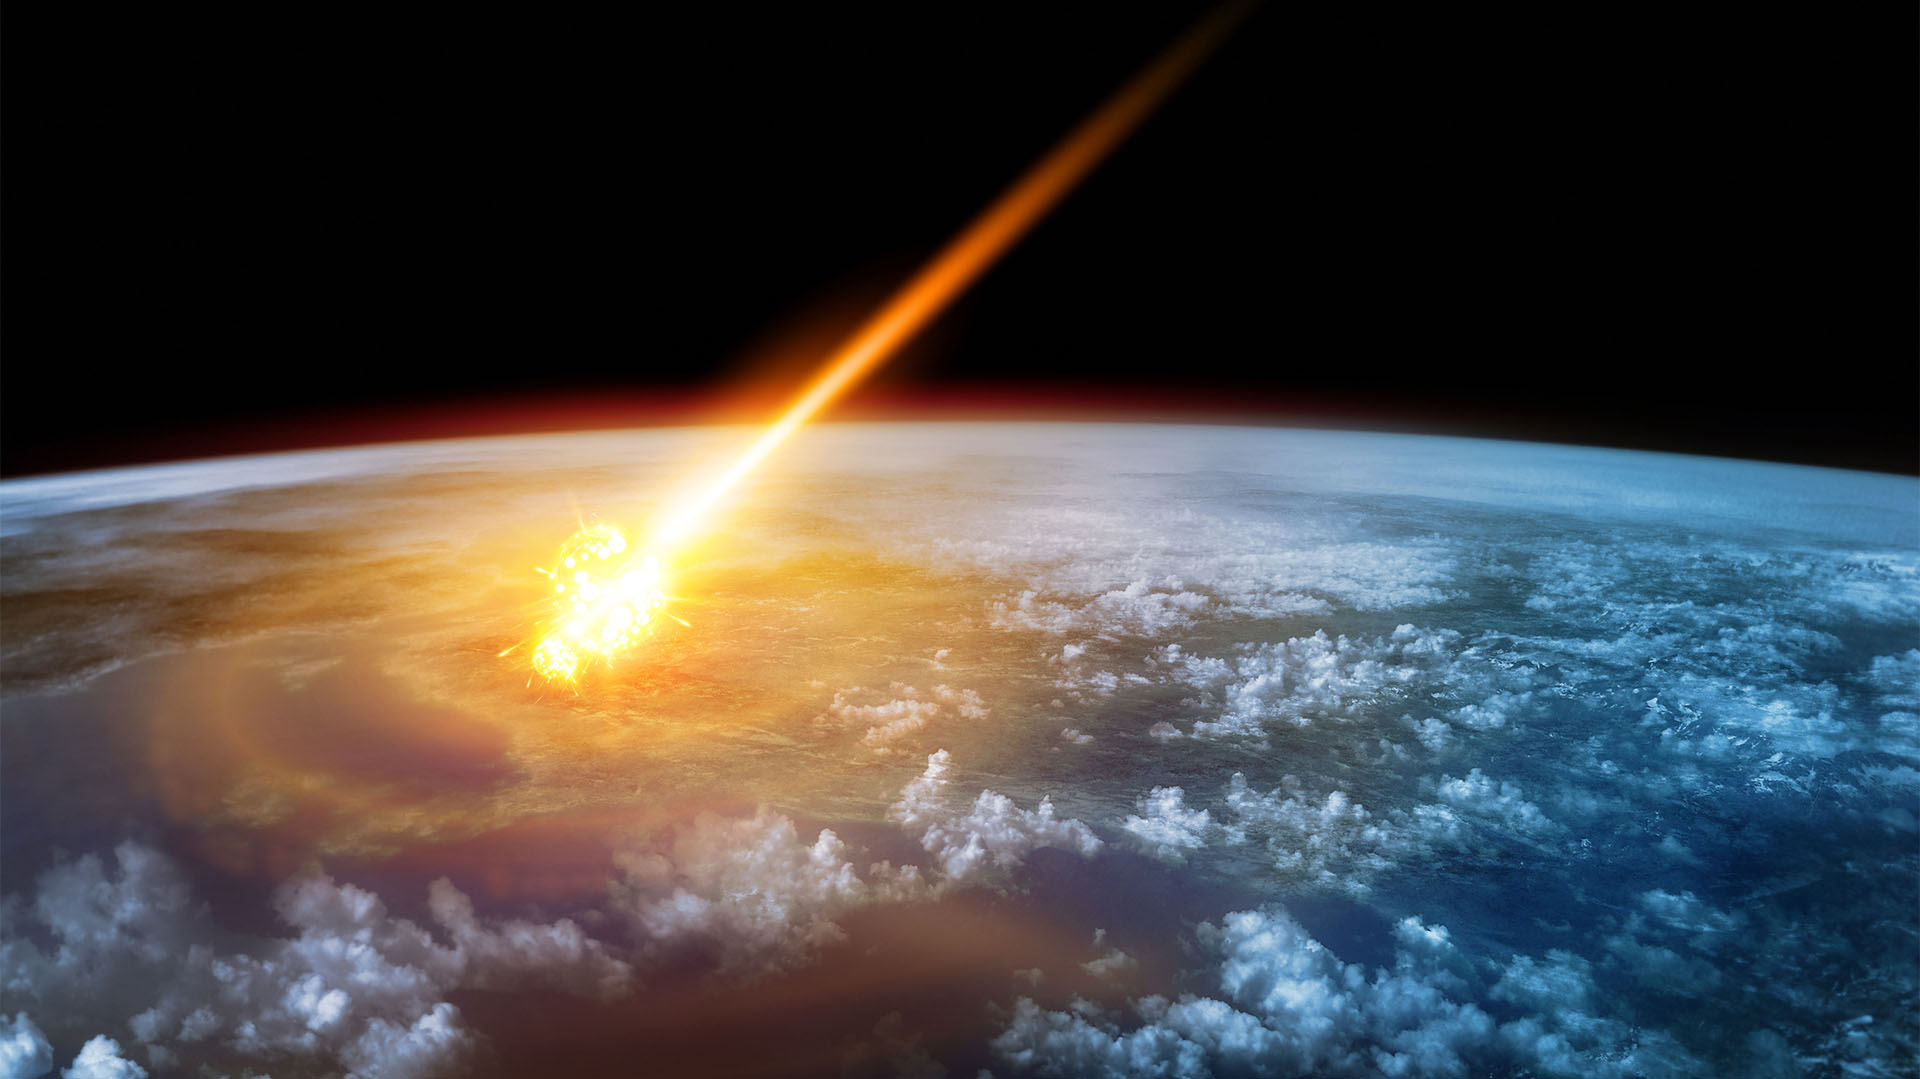 Su impacto contra la Tierra podría causar una explosión equivalente a 230 kilotones de dinamita. Hay que calcular que la bomba de Hiroshima tenía solo 15 kilotones de poder (Shutterstock)